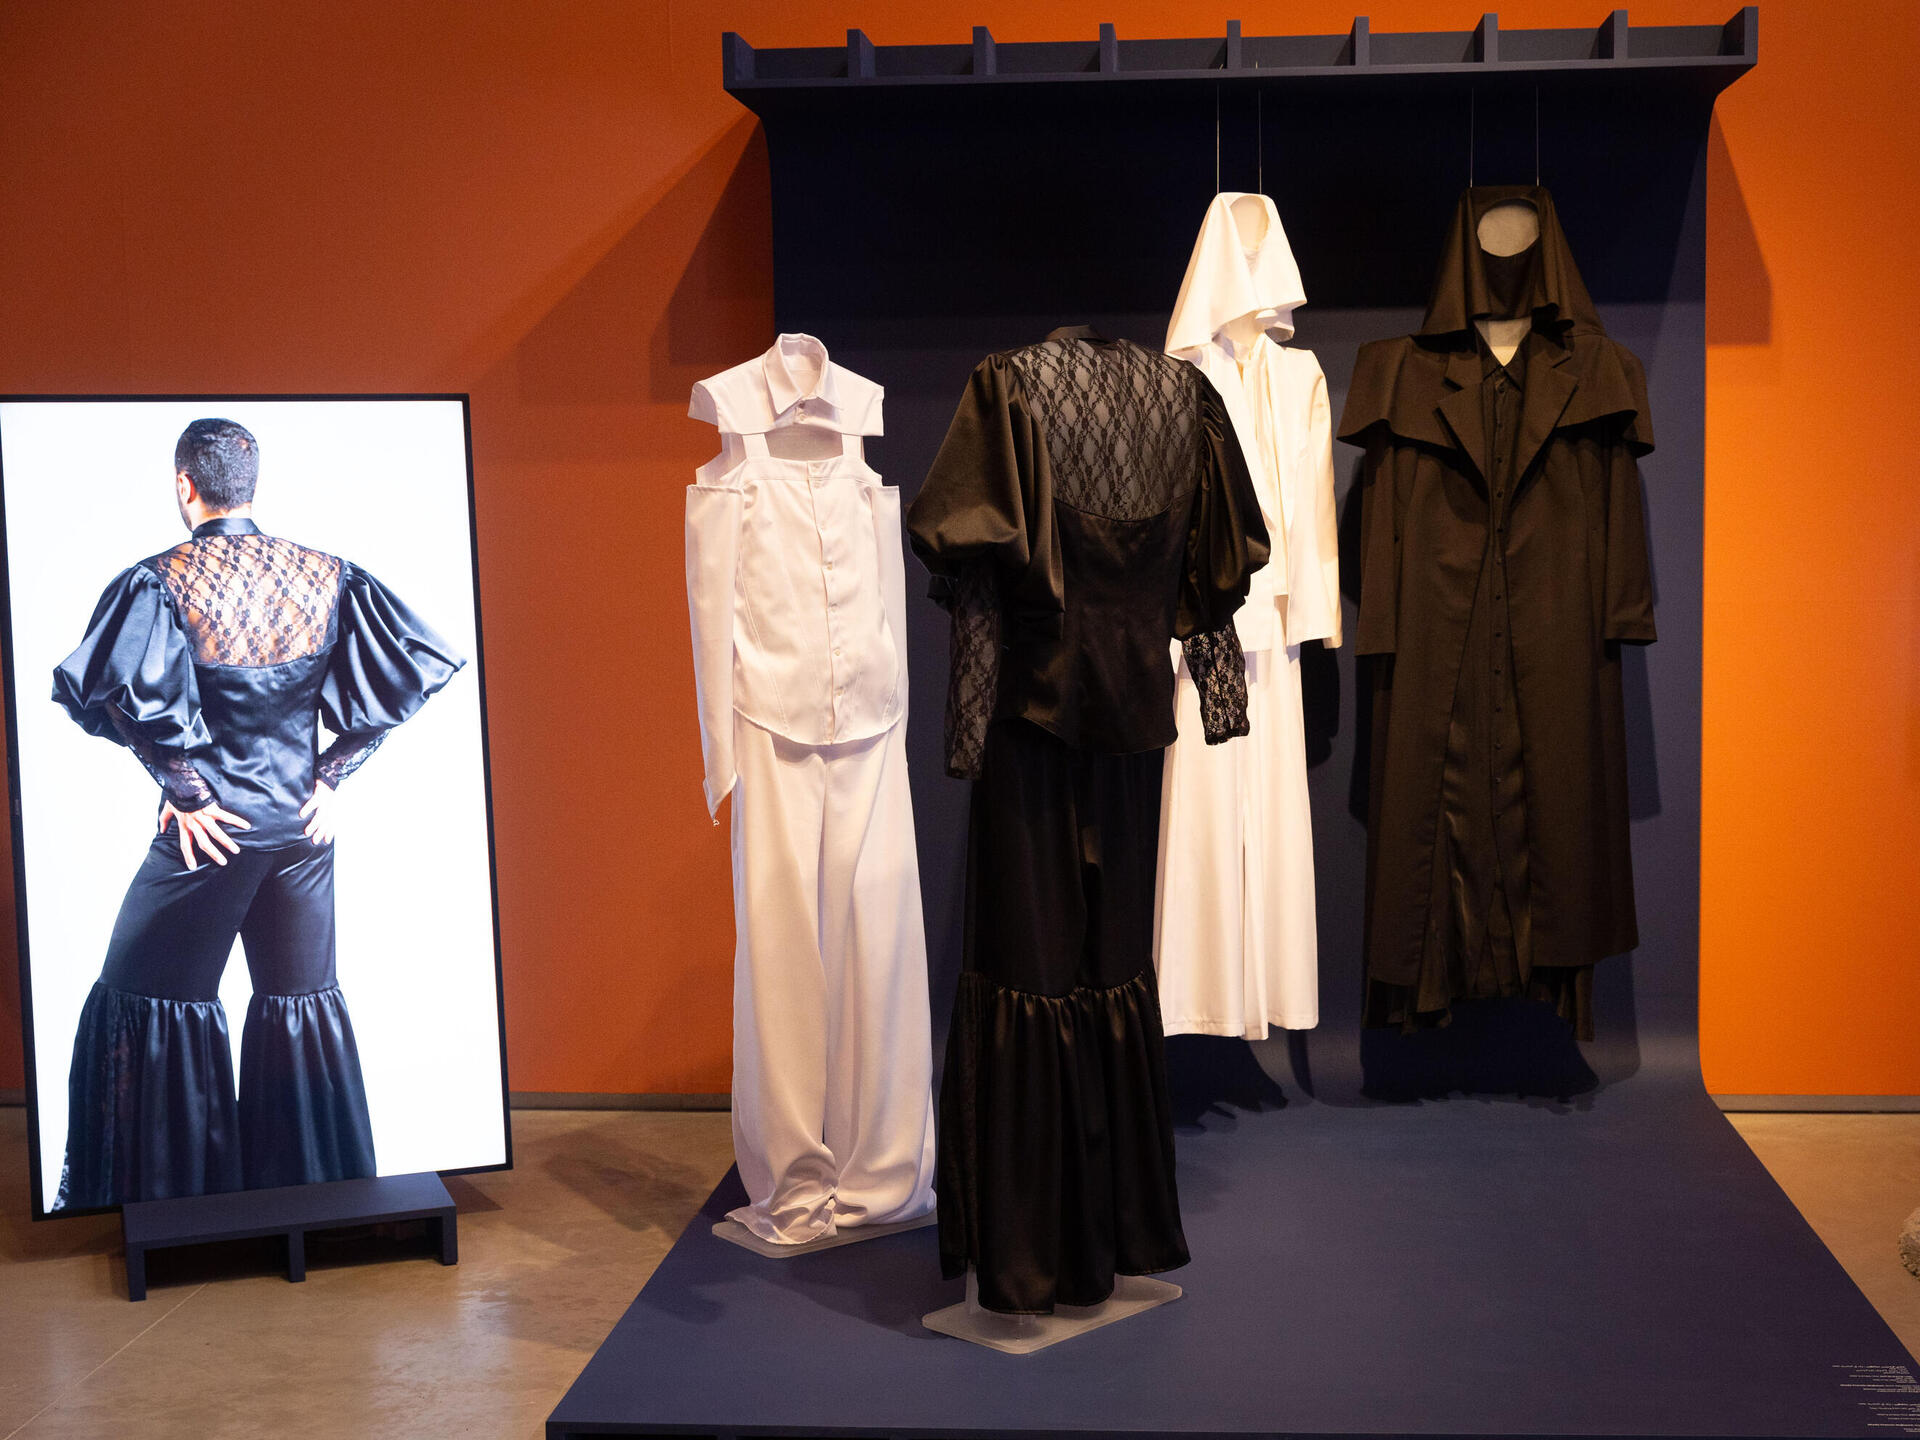 התערוכה "מעצבים בערבית" במוזיאון ישראל, ירושלים